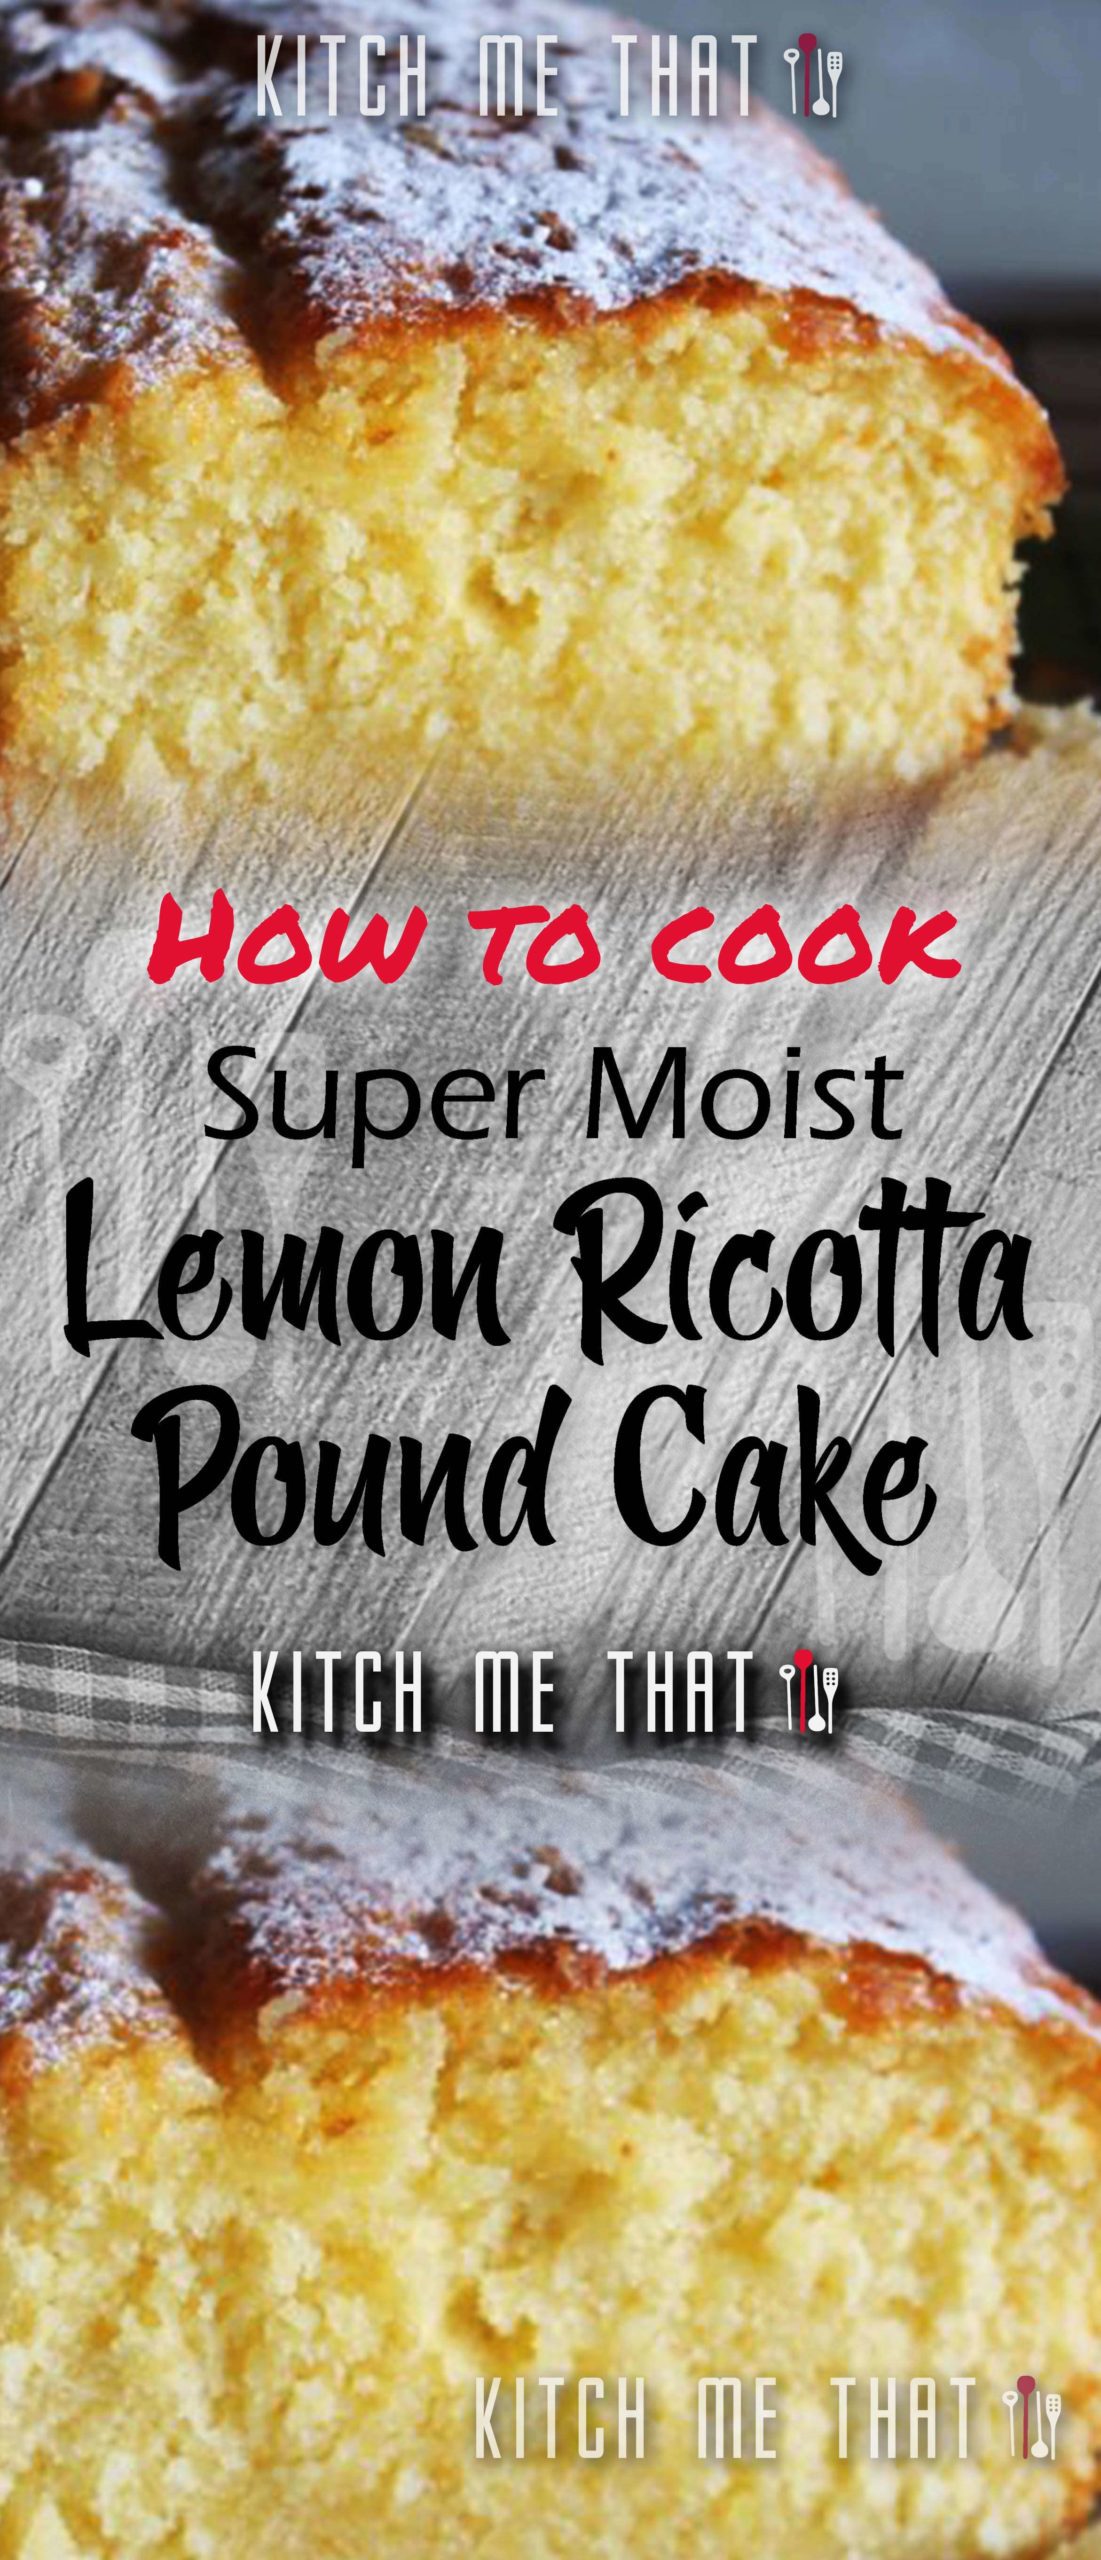 Super Moist Lemon Ricotta Pound Cake